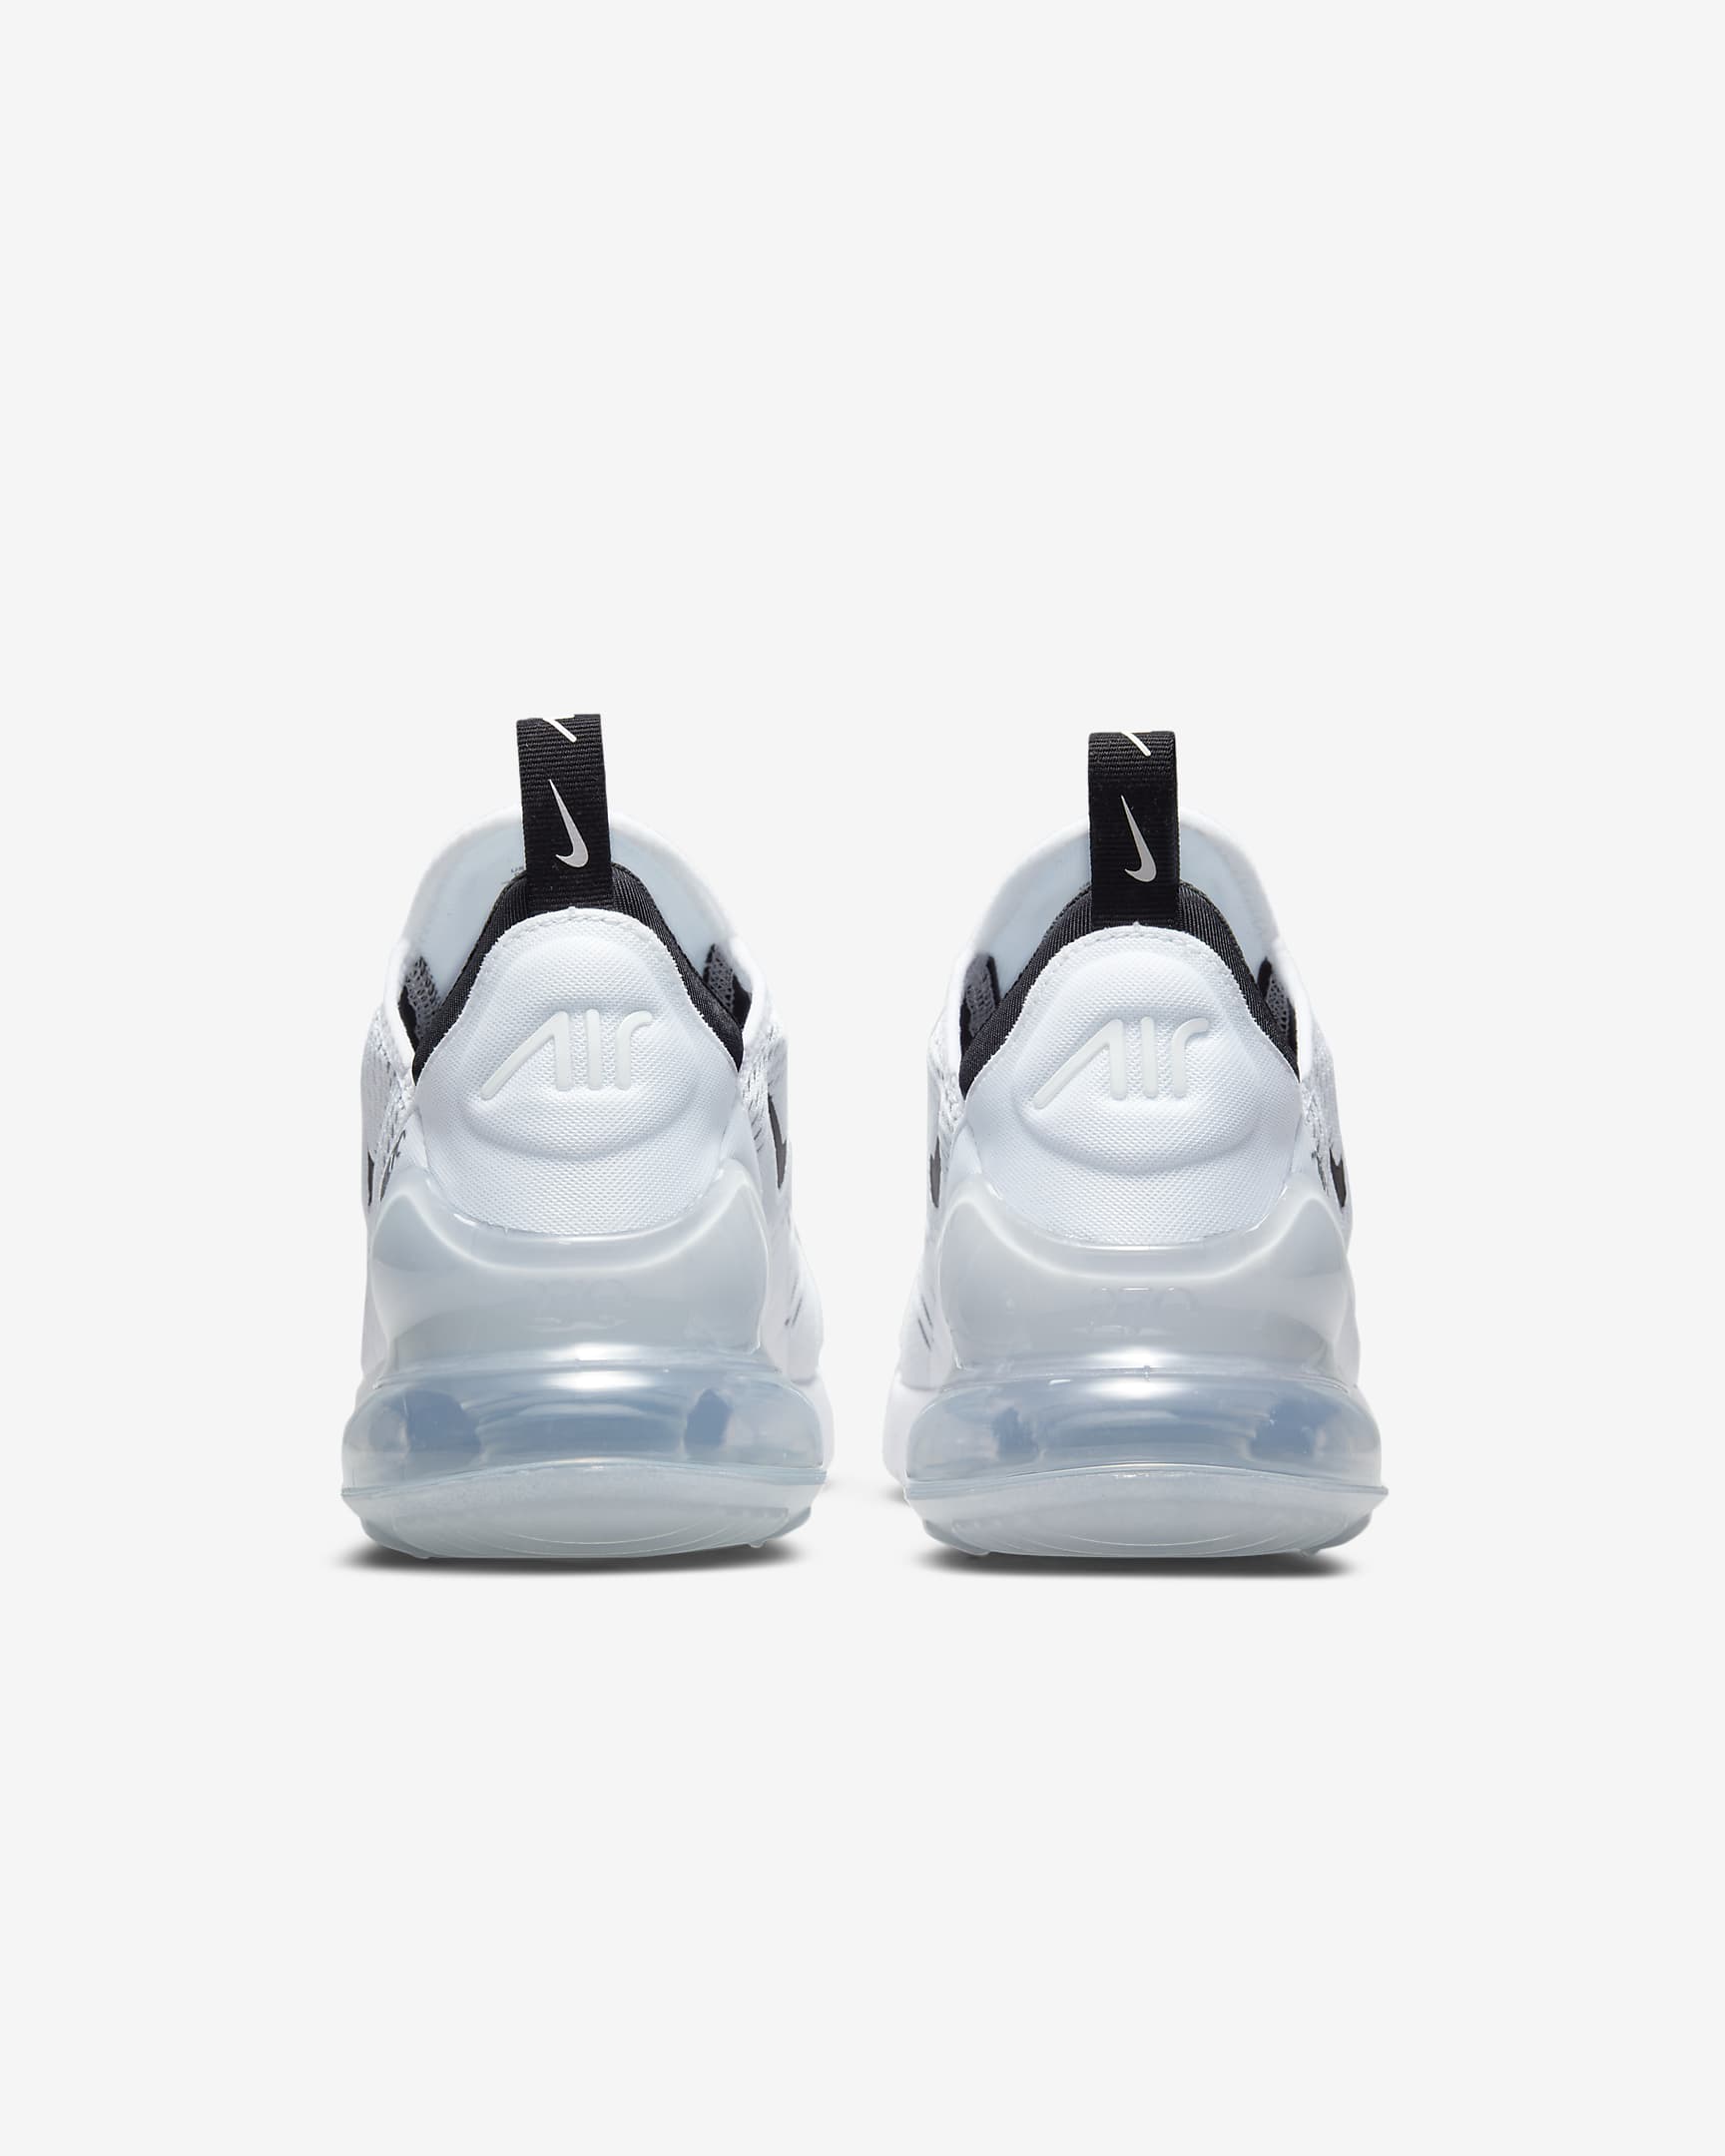 Chaussure Nike Air Max 270 pour femme - Blanc/Blanc/Noir